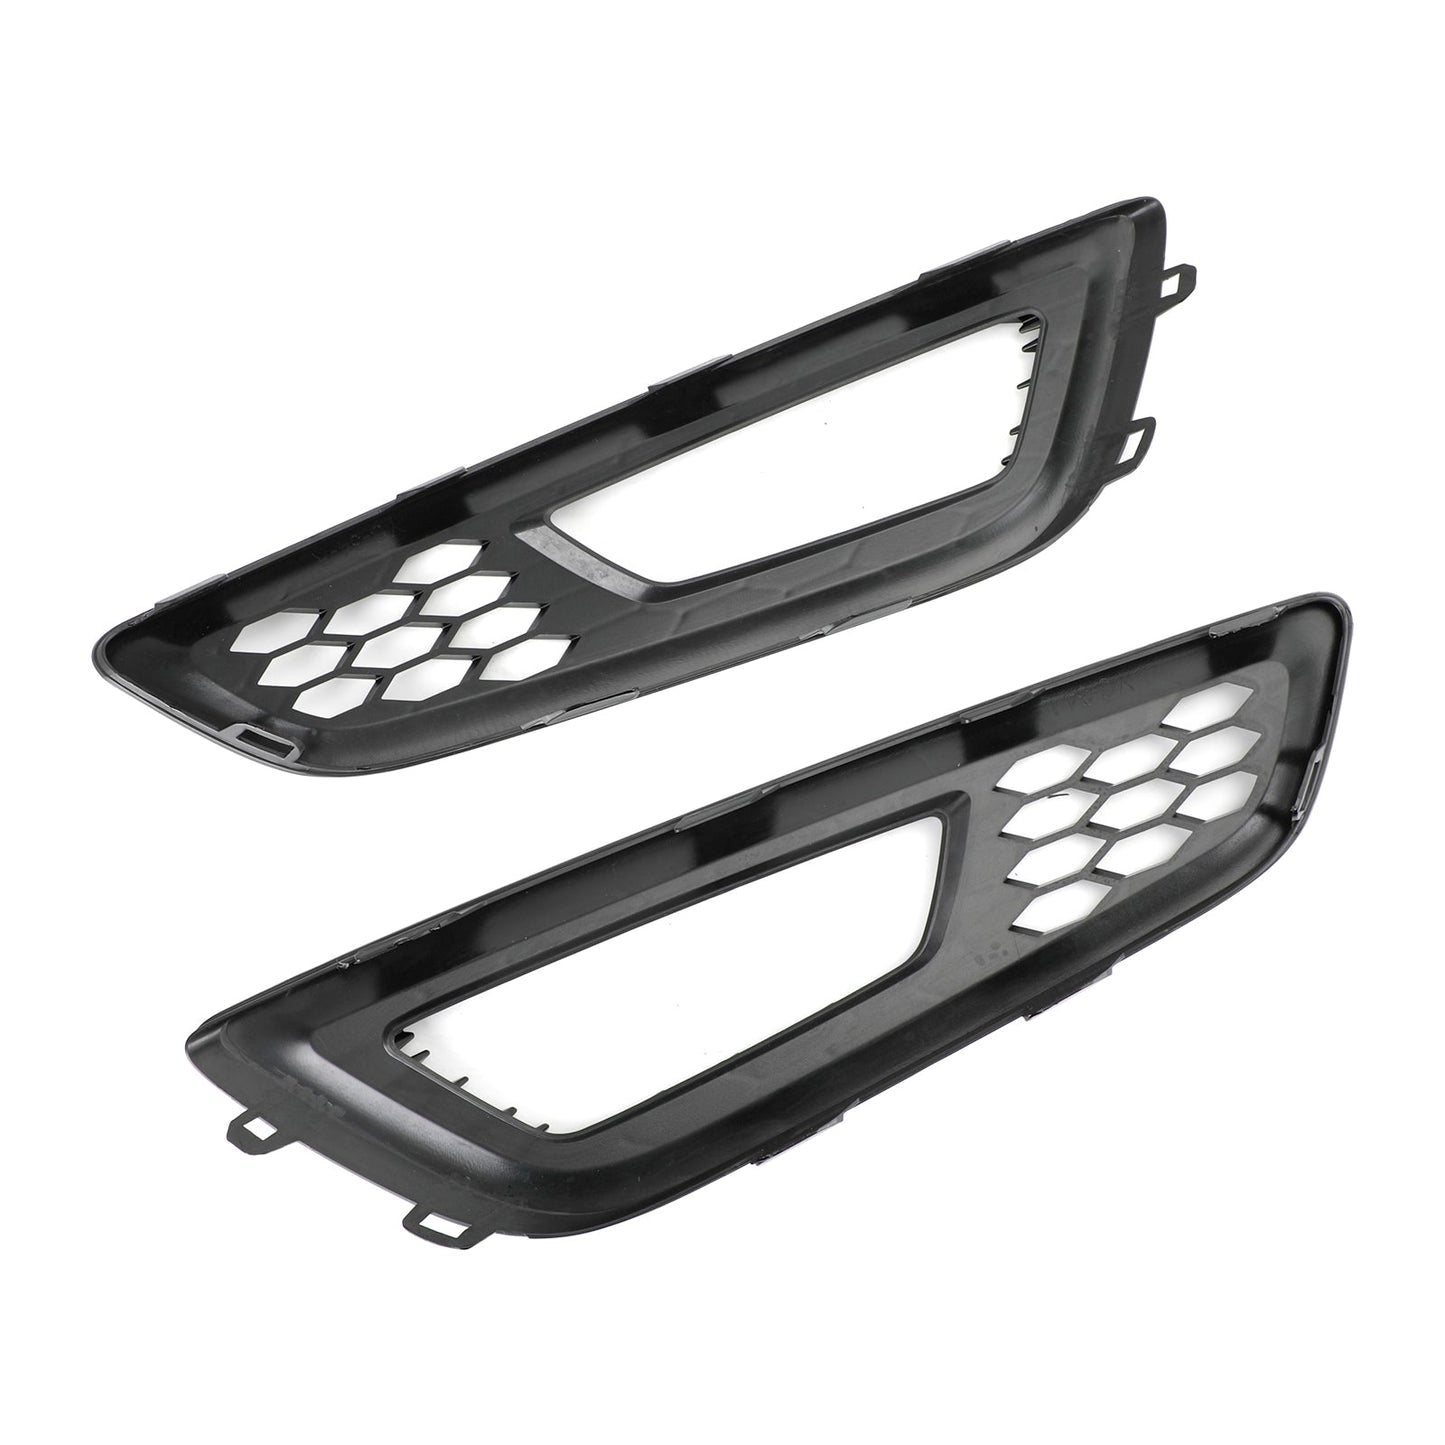 Ford Focus 2015-2017 Paire de pare-chocs avant antibrouillard couvercle lunette grille